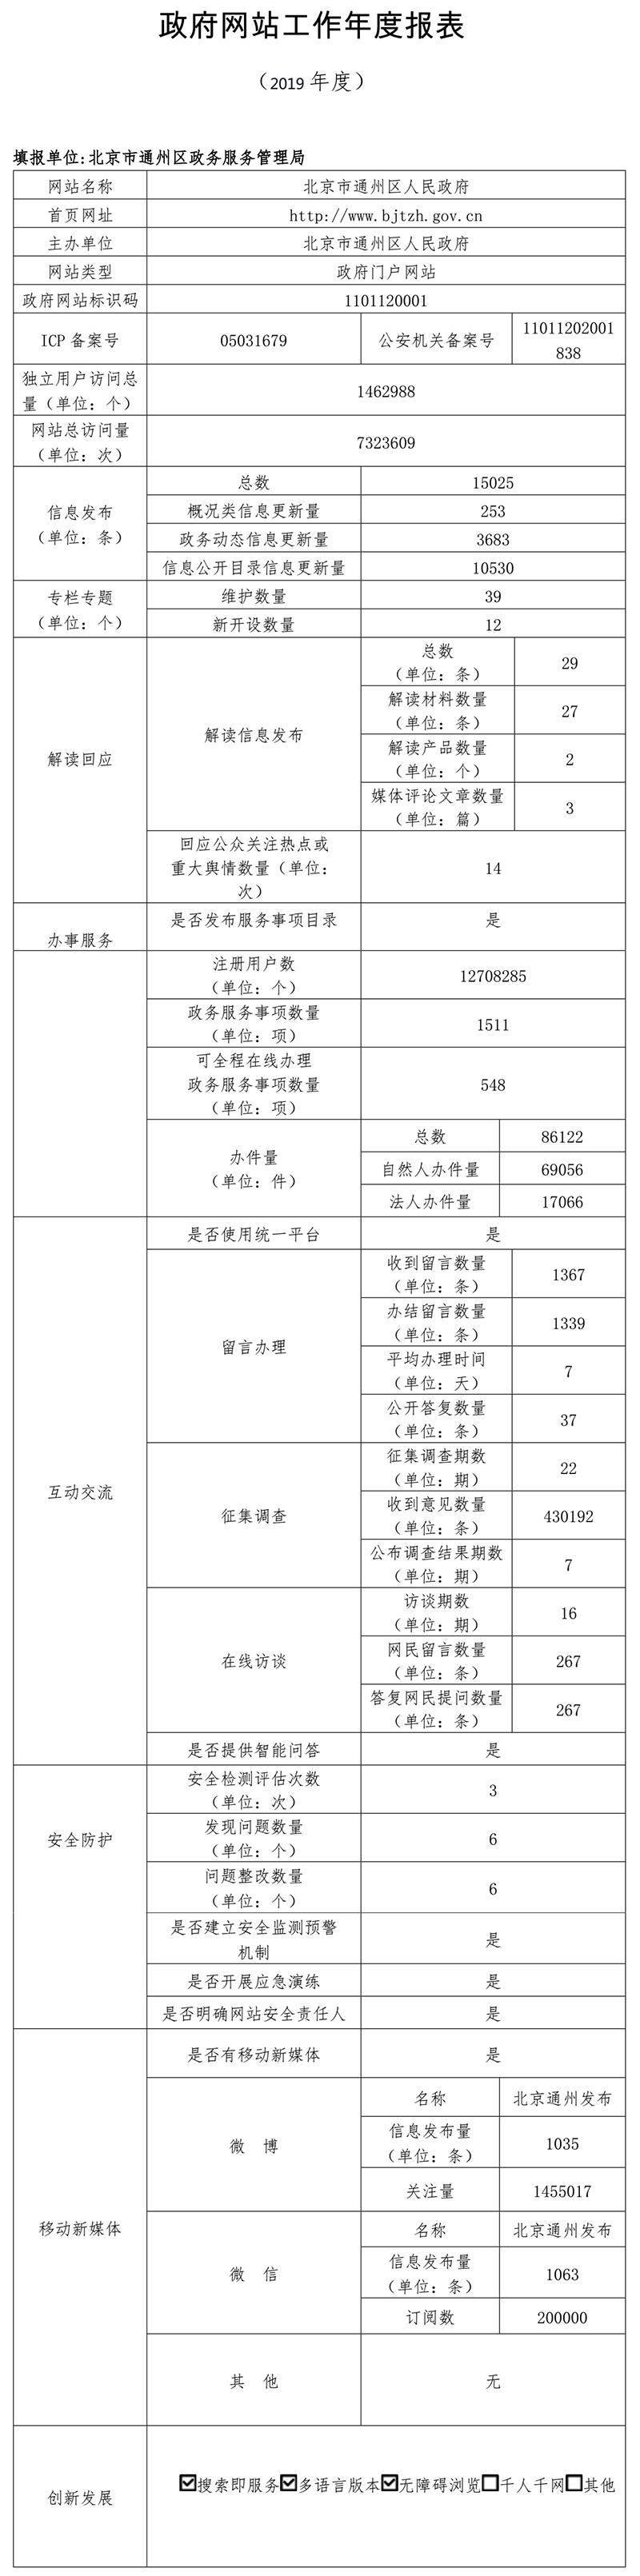 通州區2019年政府網站年度工作報表